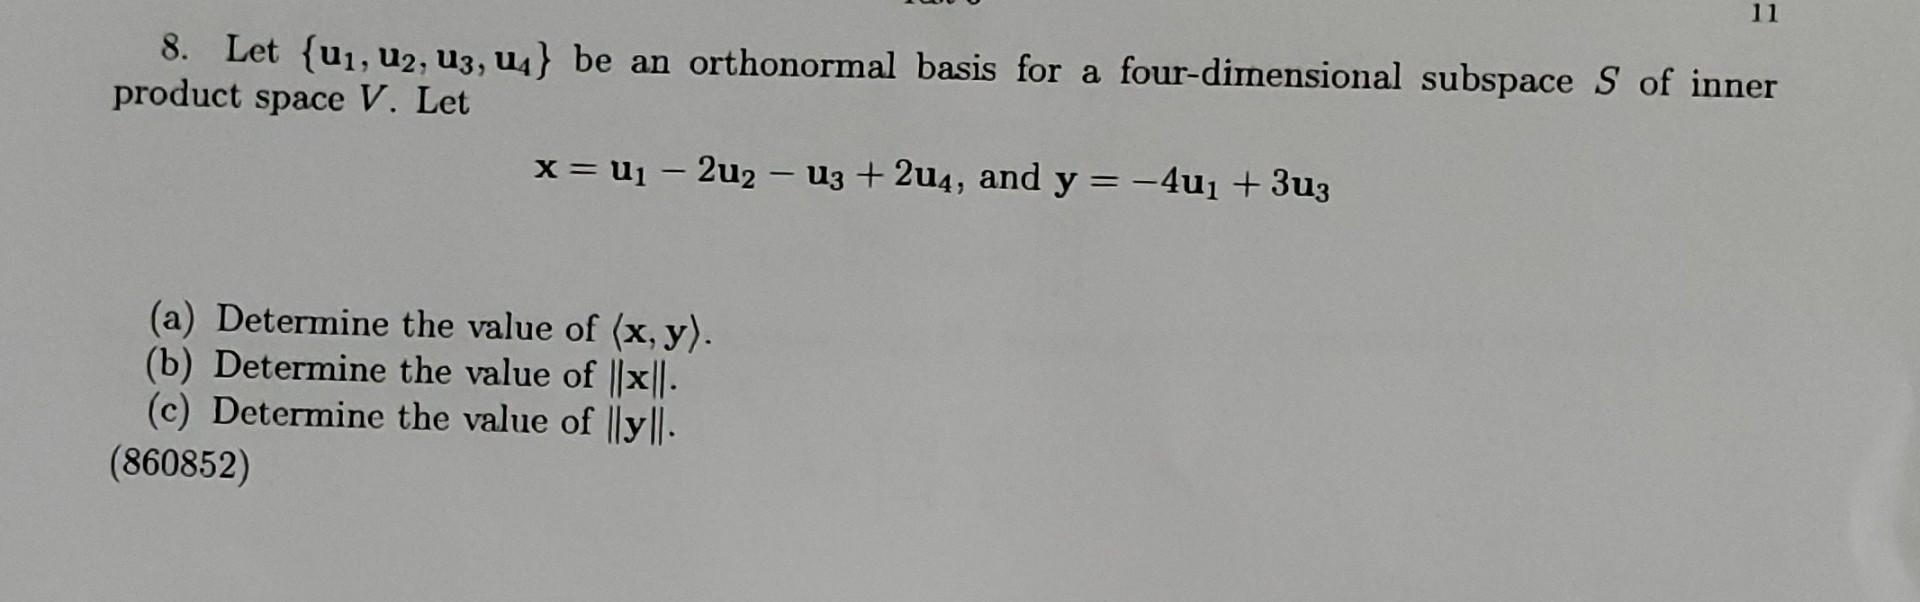 Solved 11 8 Let U1 U2 U3 44 Be An Orthonormal Basis 3058